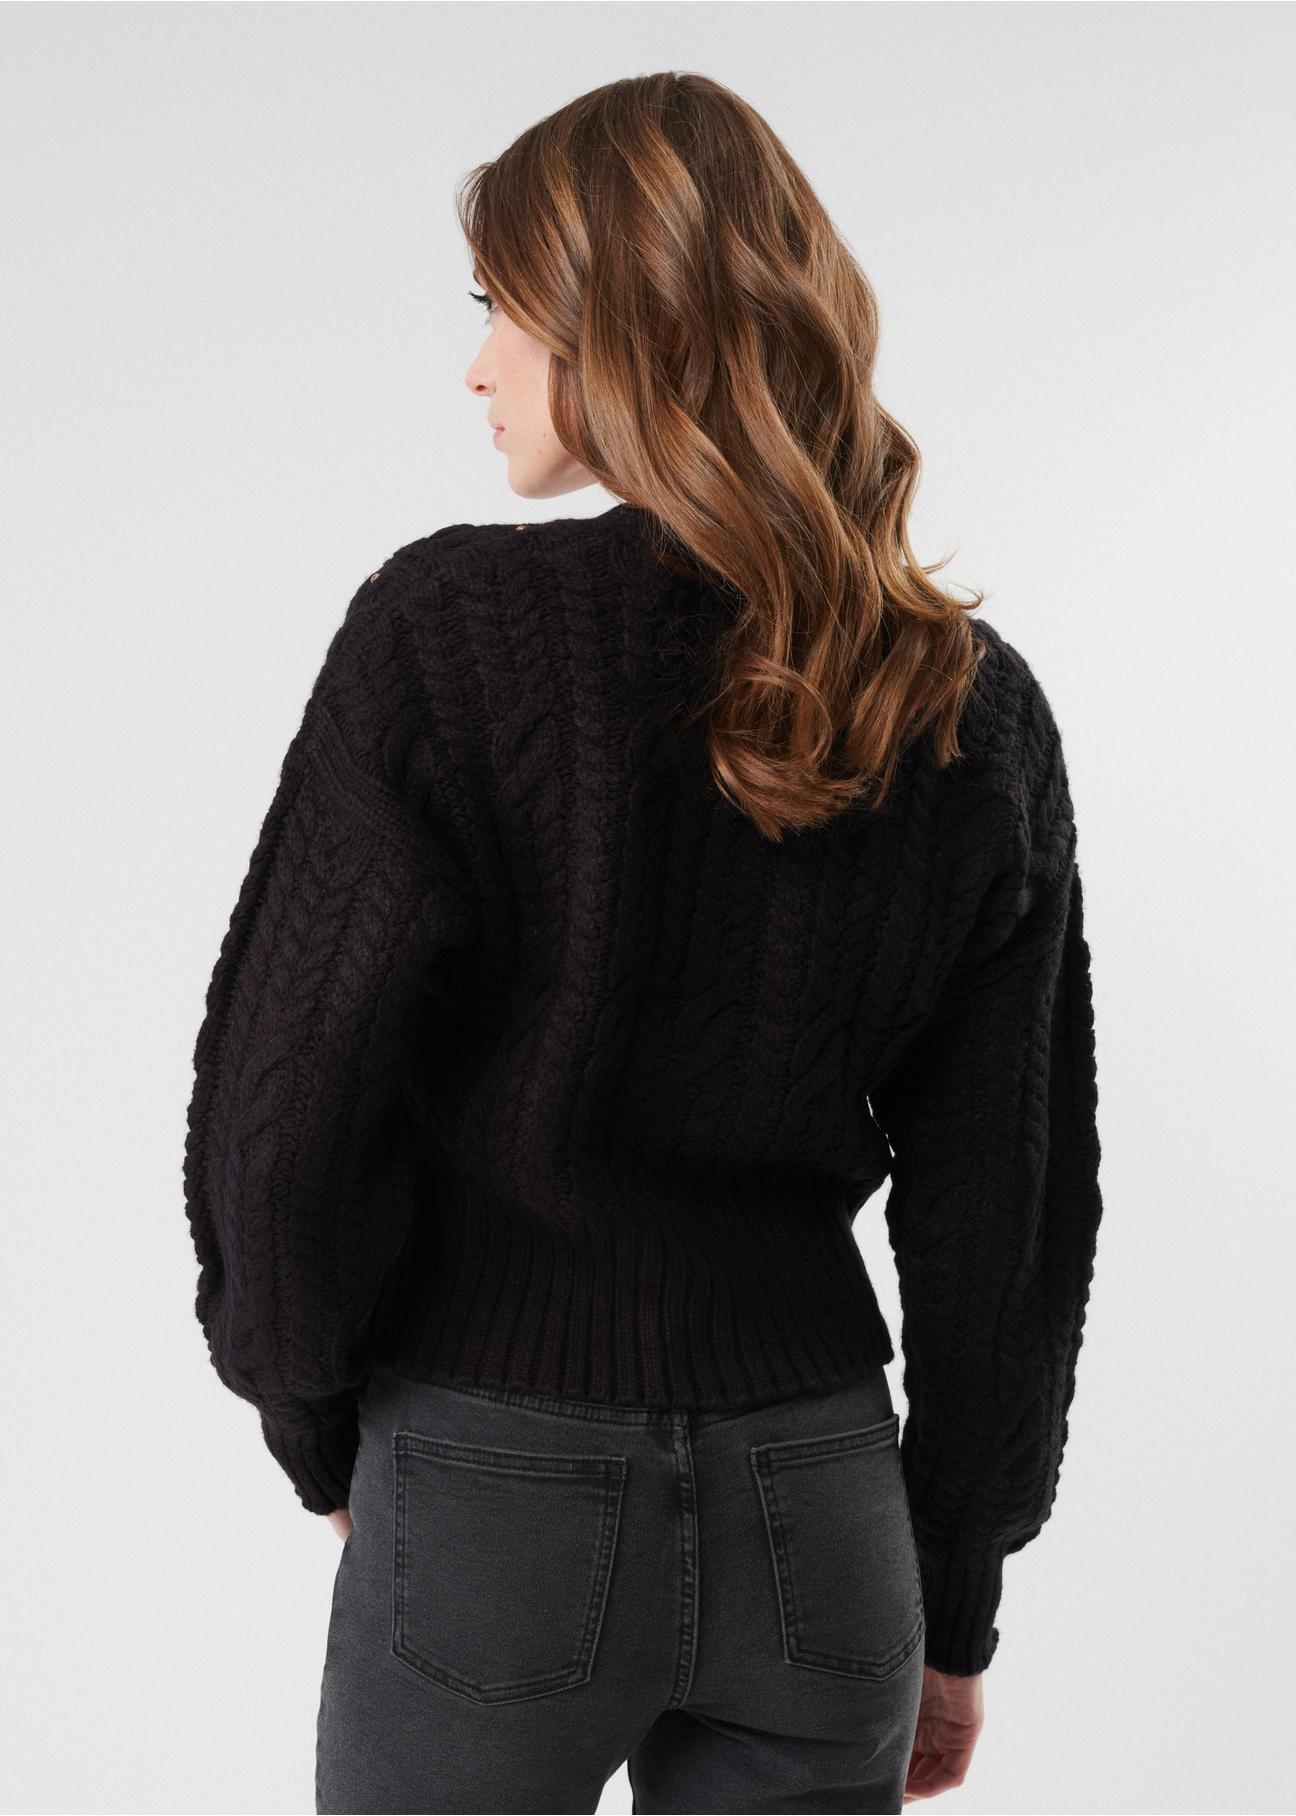 Czarny sweter damski z nitami KARDT-0030-99(Z23)